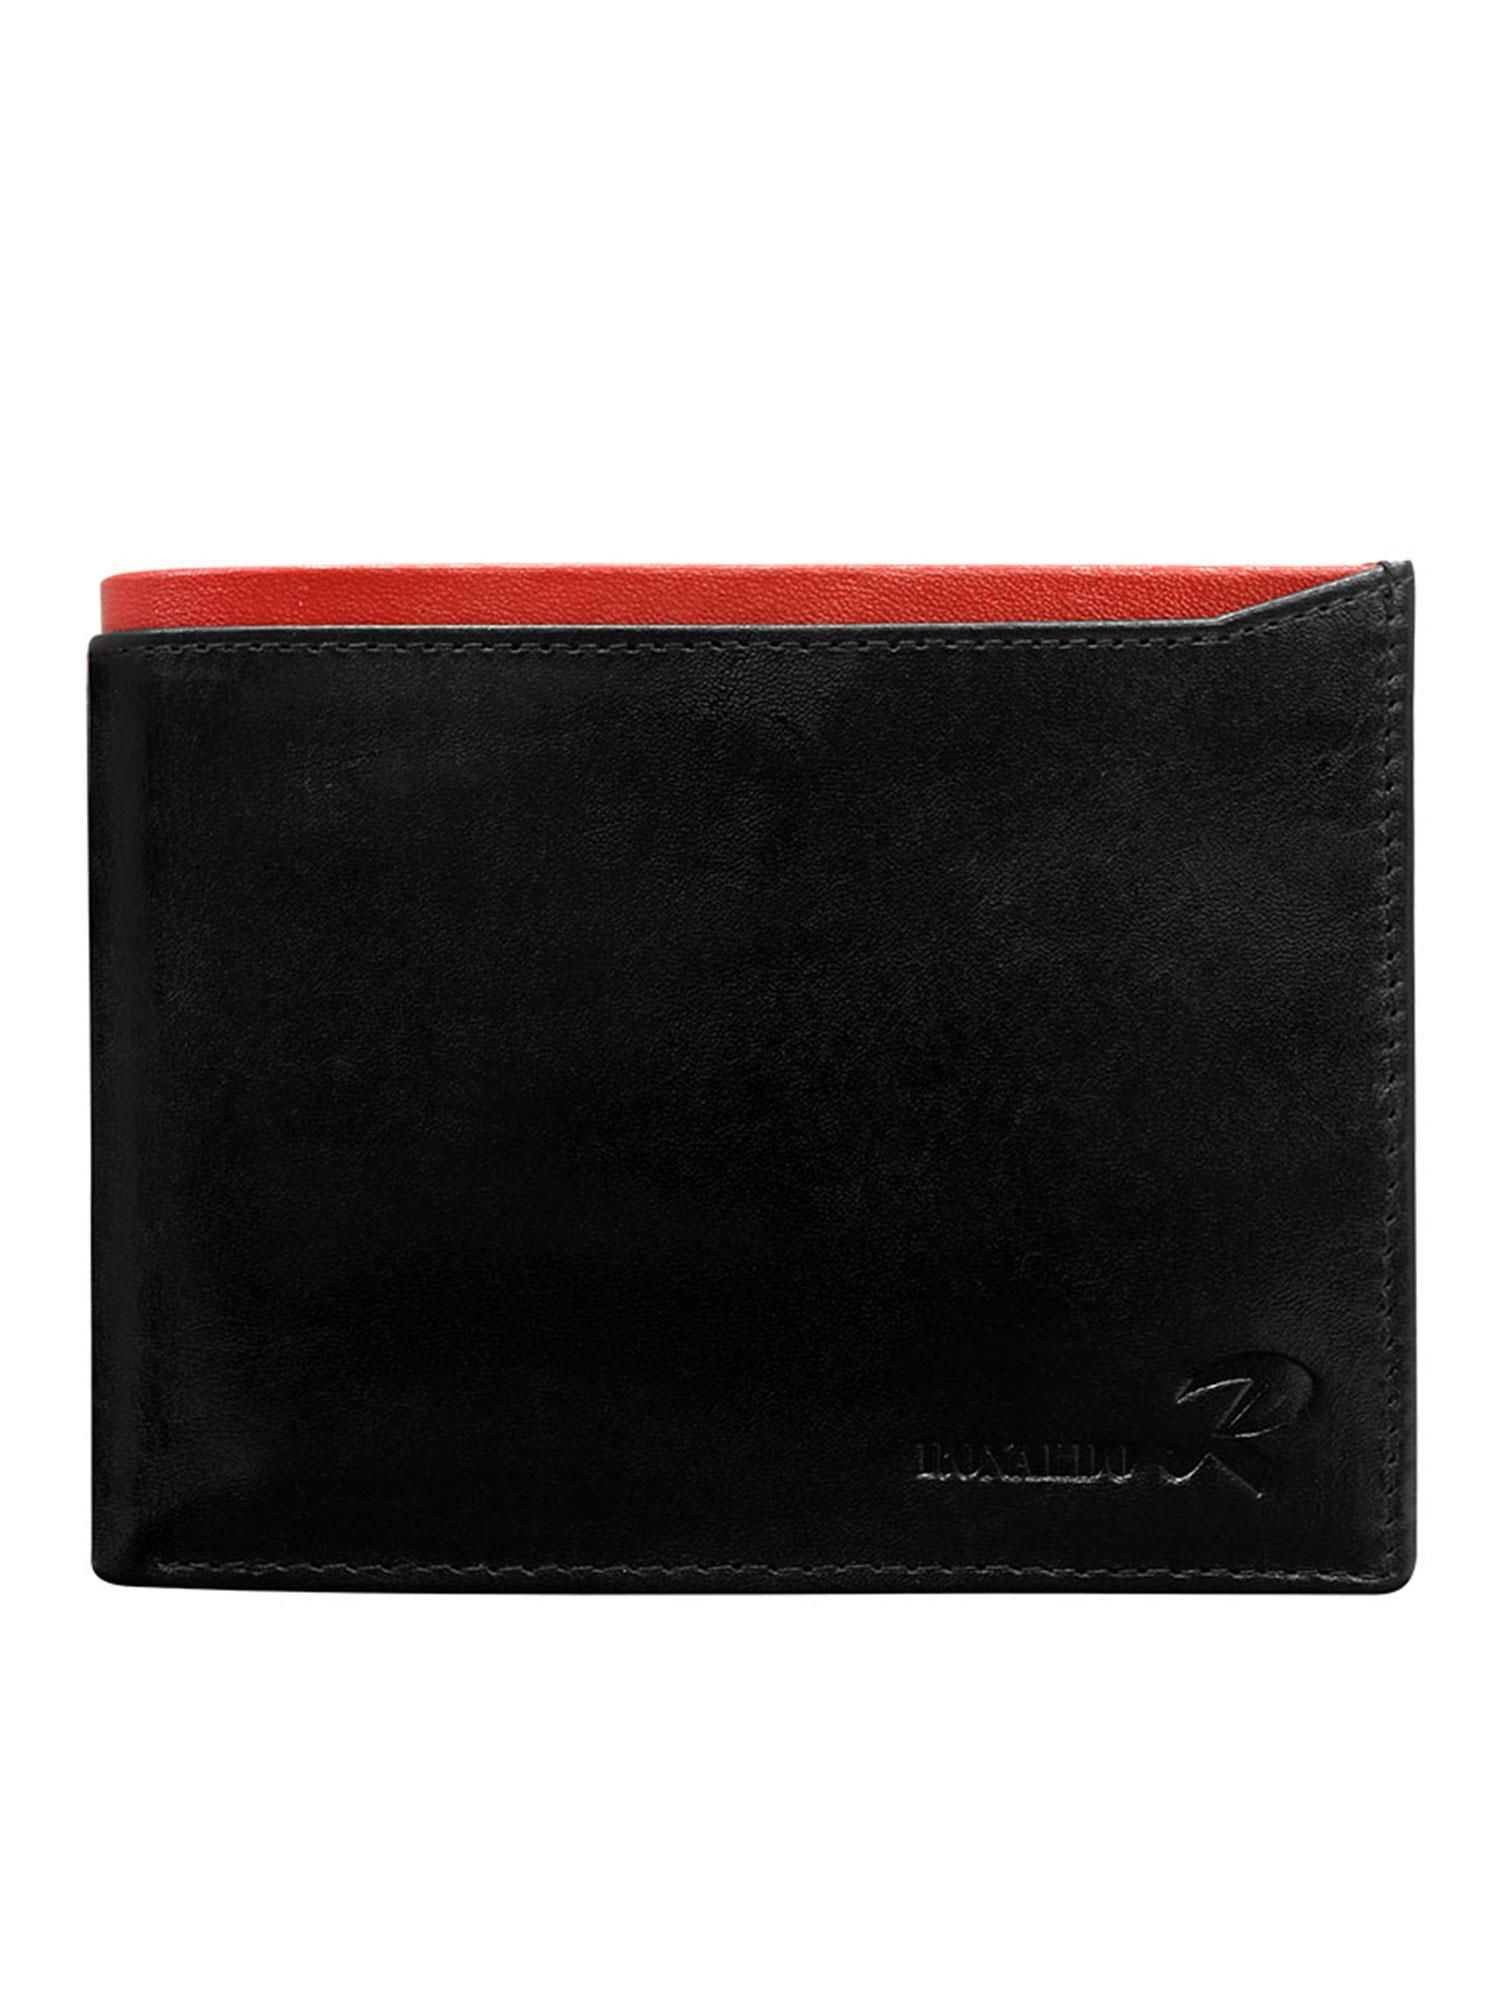 Peněženka CE PR N01 VT.90 černá a červená jedna velikost